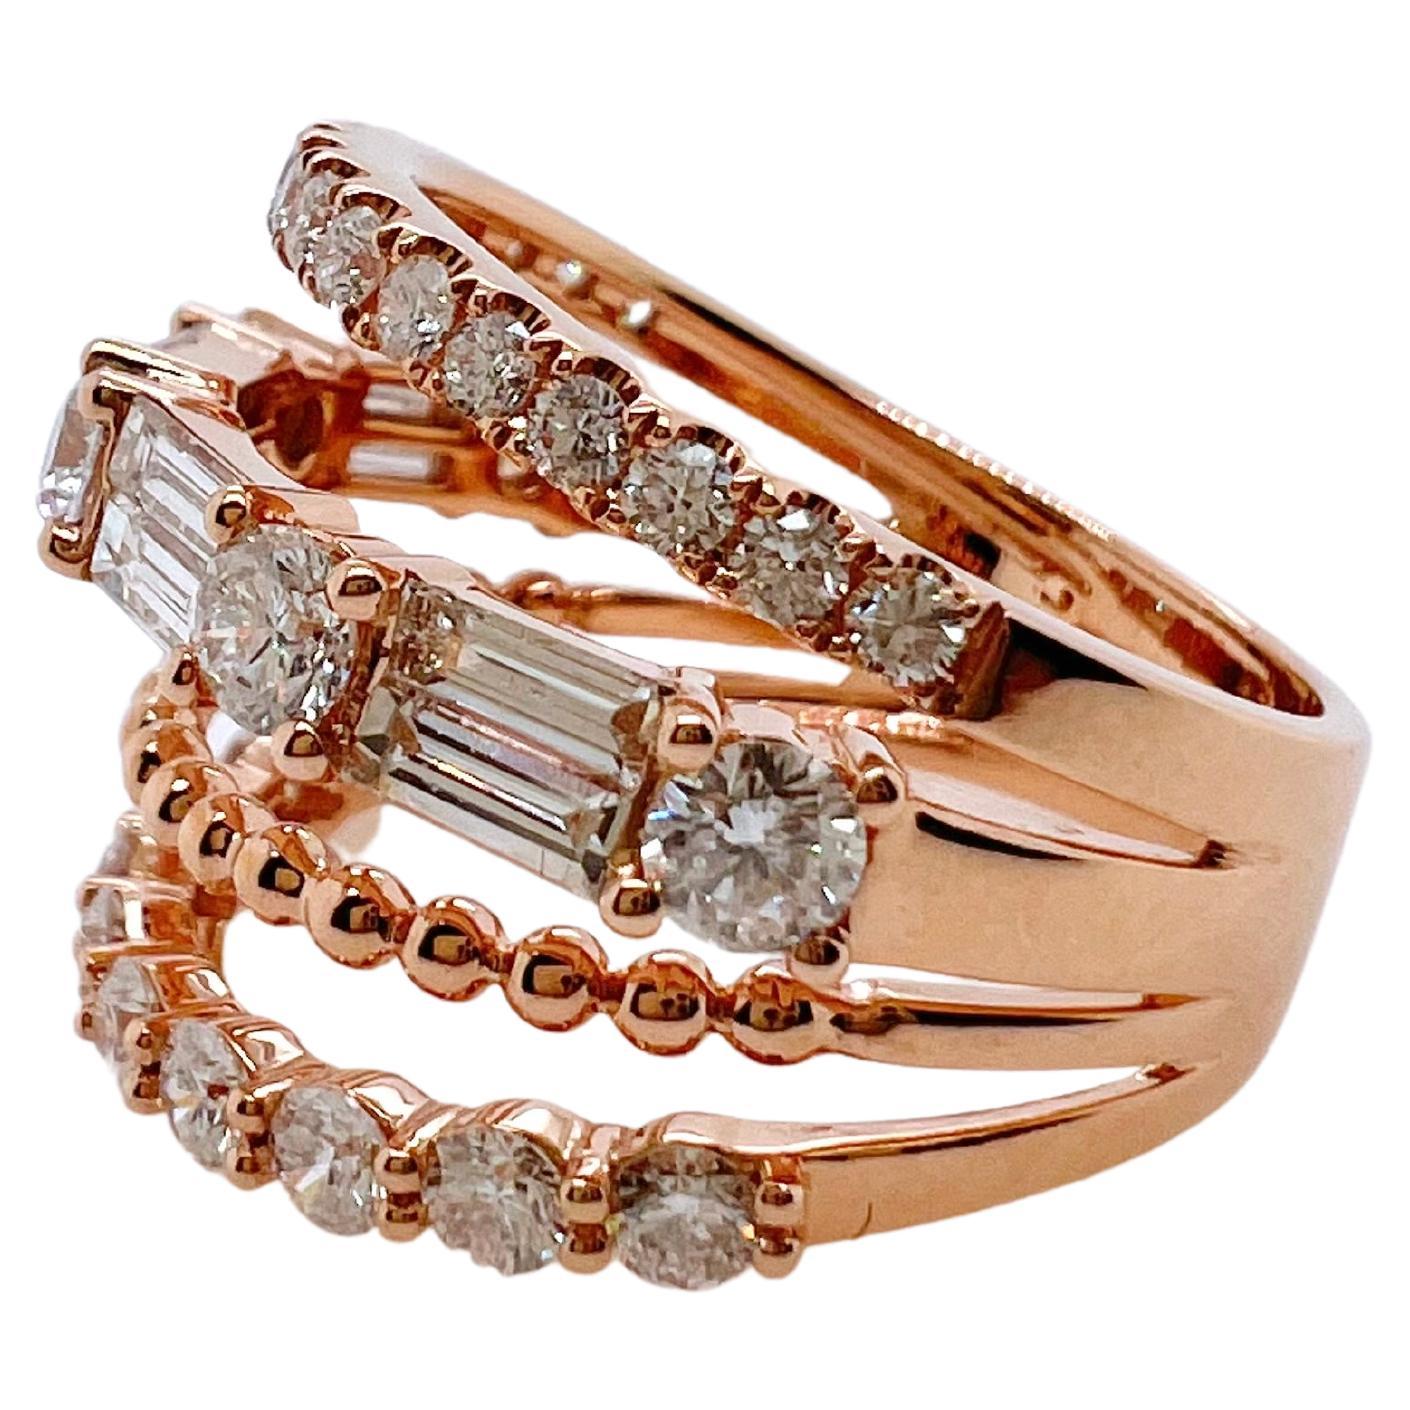 Dieser moderne Diamant-Multilayer-Ring wird Ihr Lieblingsring sein.  Die schönen Reihen haben alle unterschiedliche Muster, um
machen diesen Ring zu einem echten Hingucker.  Die Baguettes und runden Diamanten werden in diesem Ring verwendet, um